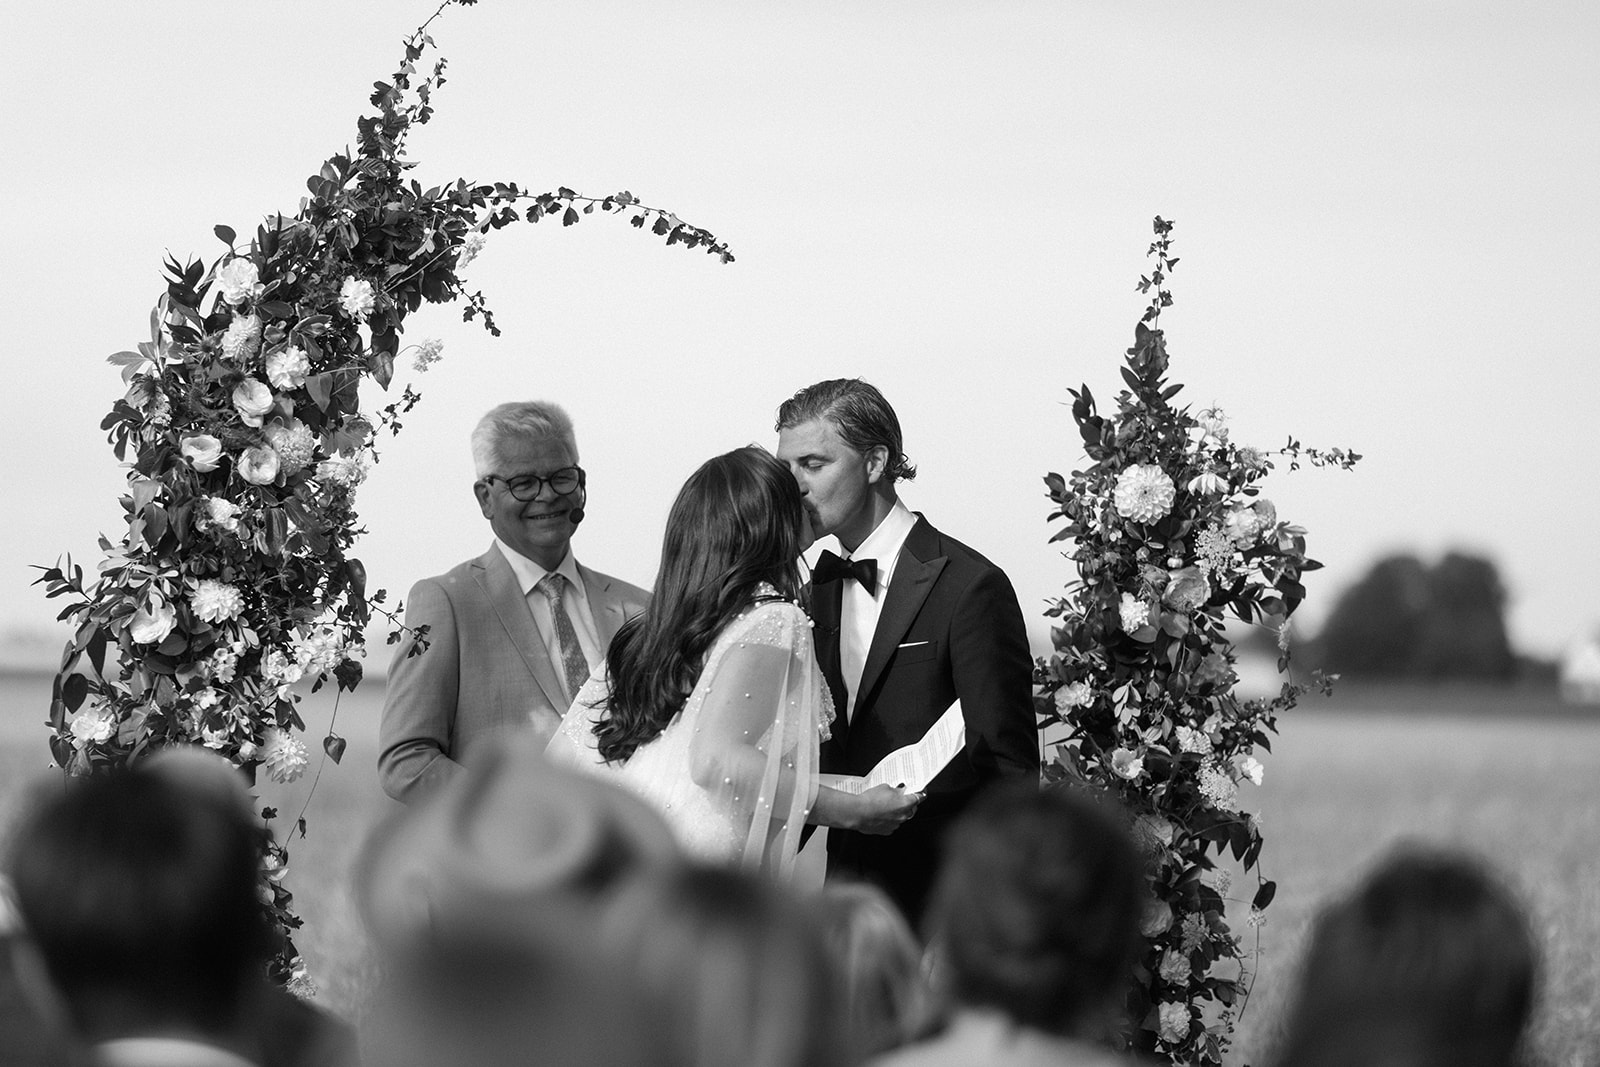 Wedding photographer Skåne, Holmanäs bröllop